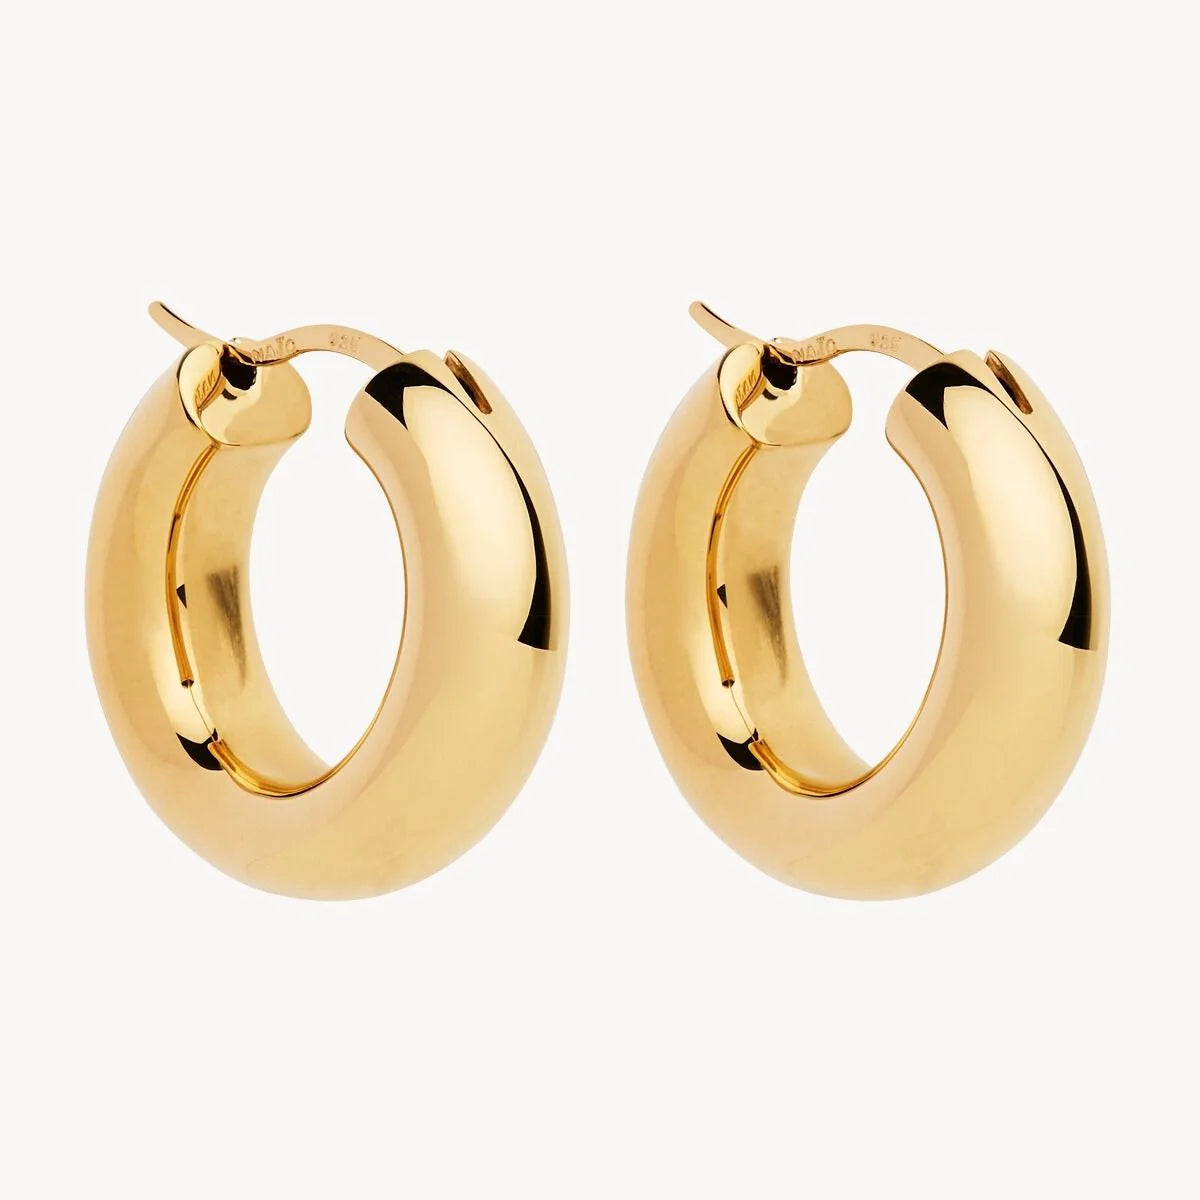 Cocoon Gold Earrings